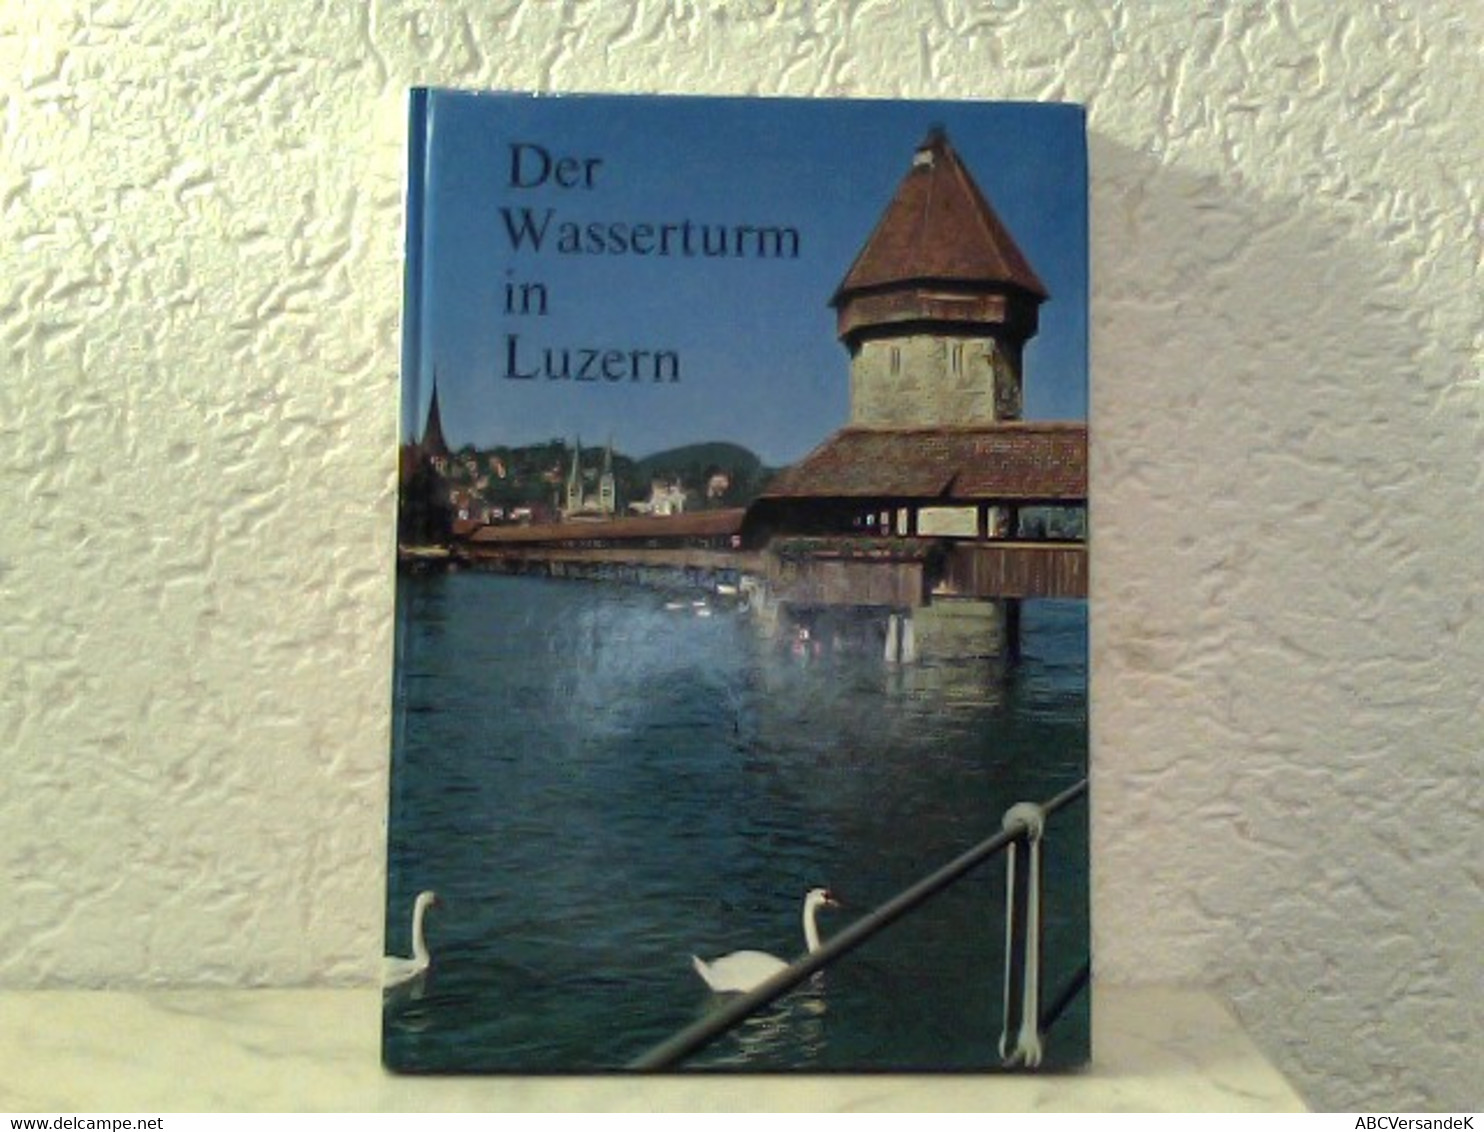 Der Wasserturm In Luzern - Herausgegeben Als Beitrag Zur 800 - Jahr - Feier Der Stadt Luzern - Schweiz